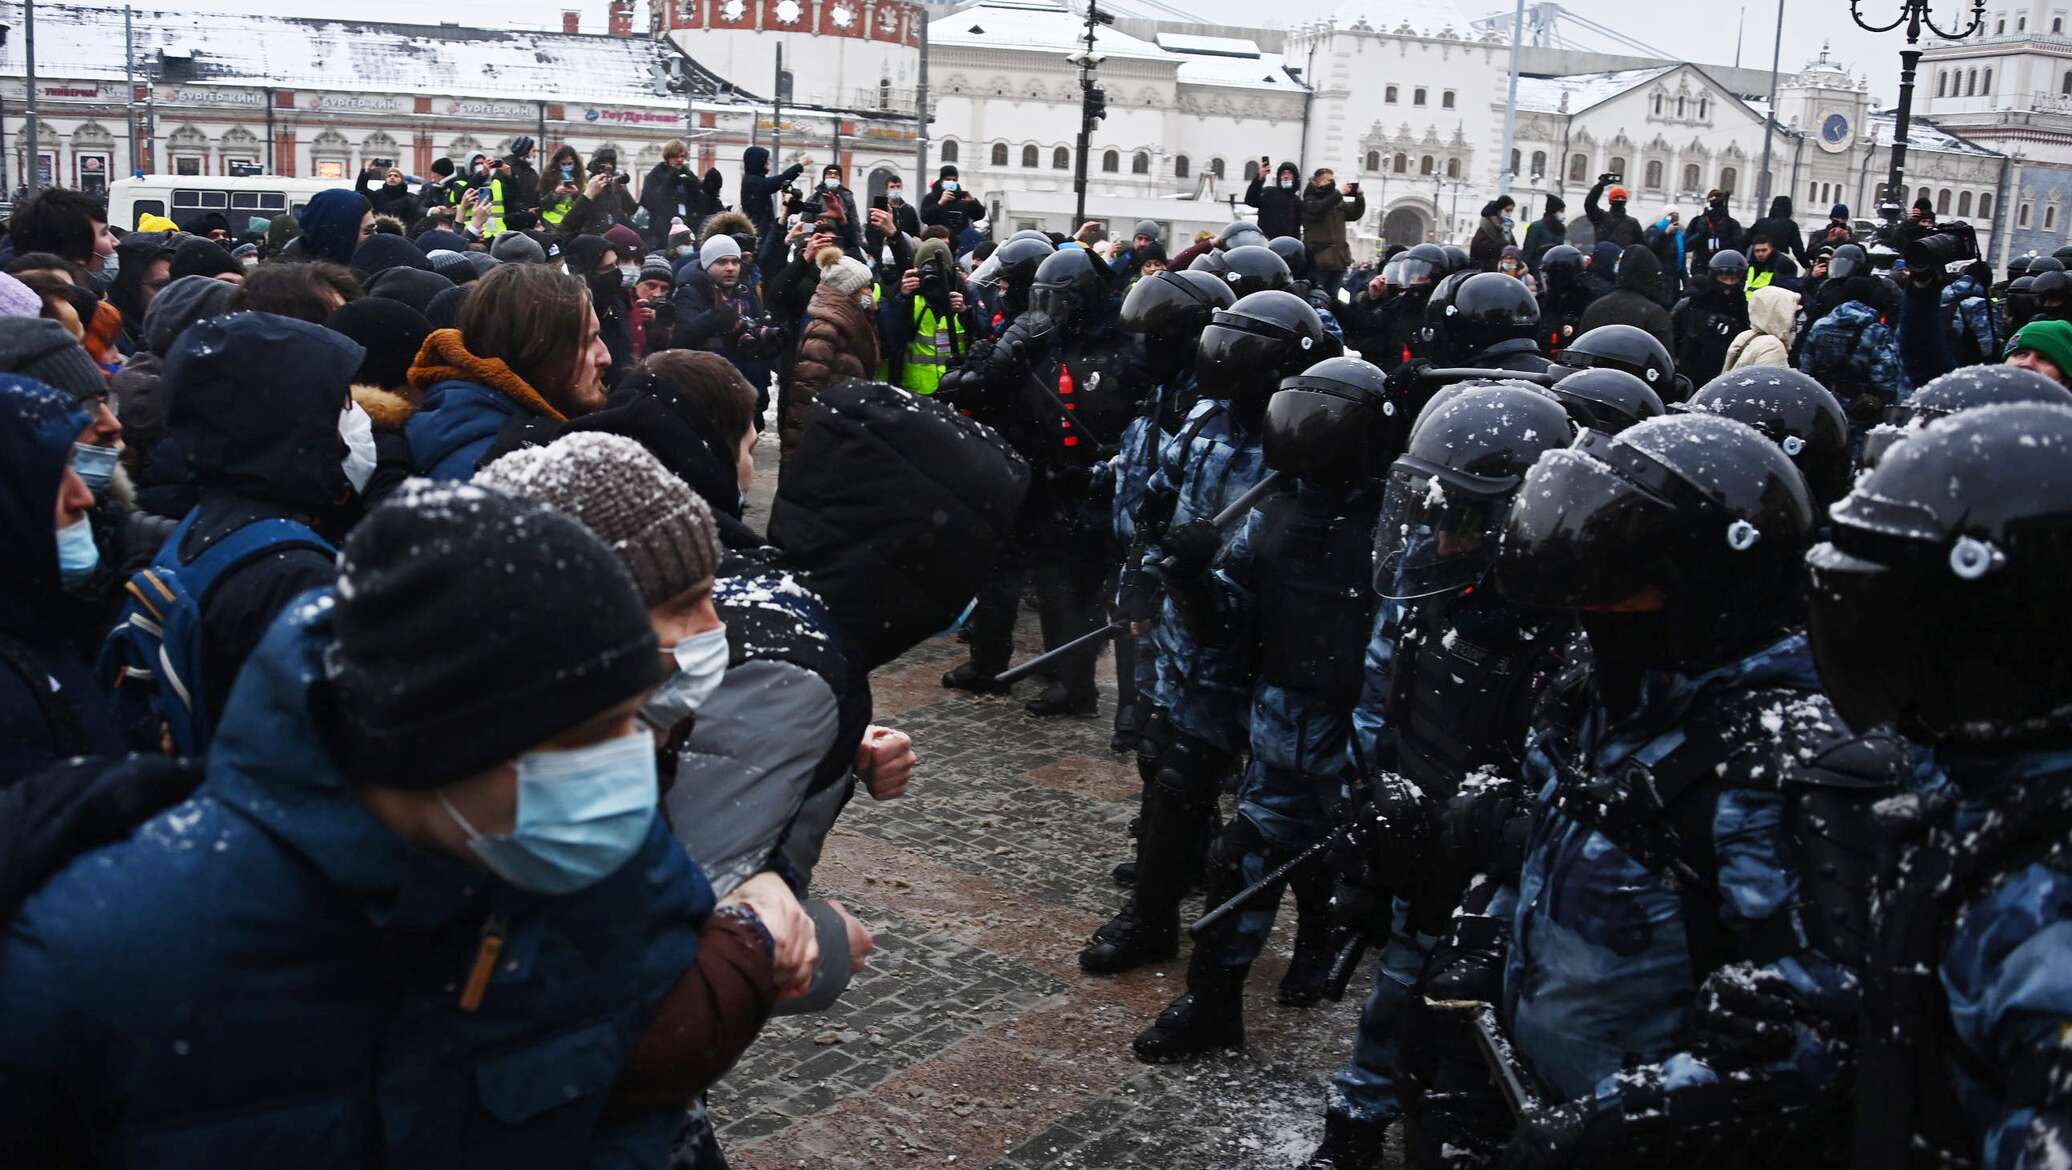 C митинг. Митинги Навального в Москве 2021 год. Протесты в Москве. Митинги протеста в России. Несанкционированный митинг.